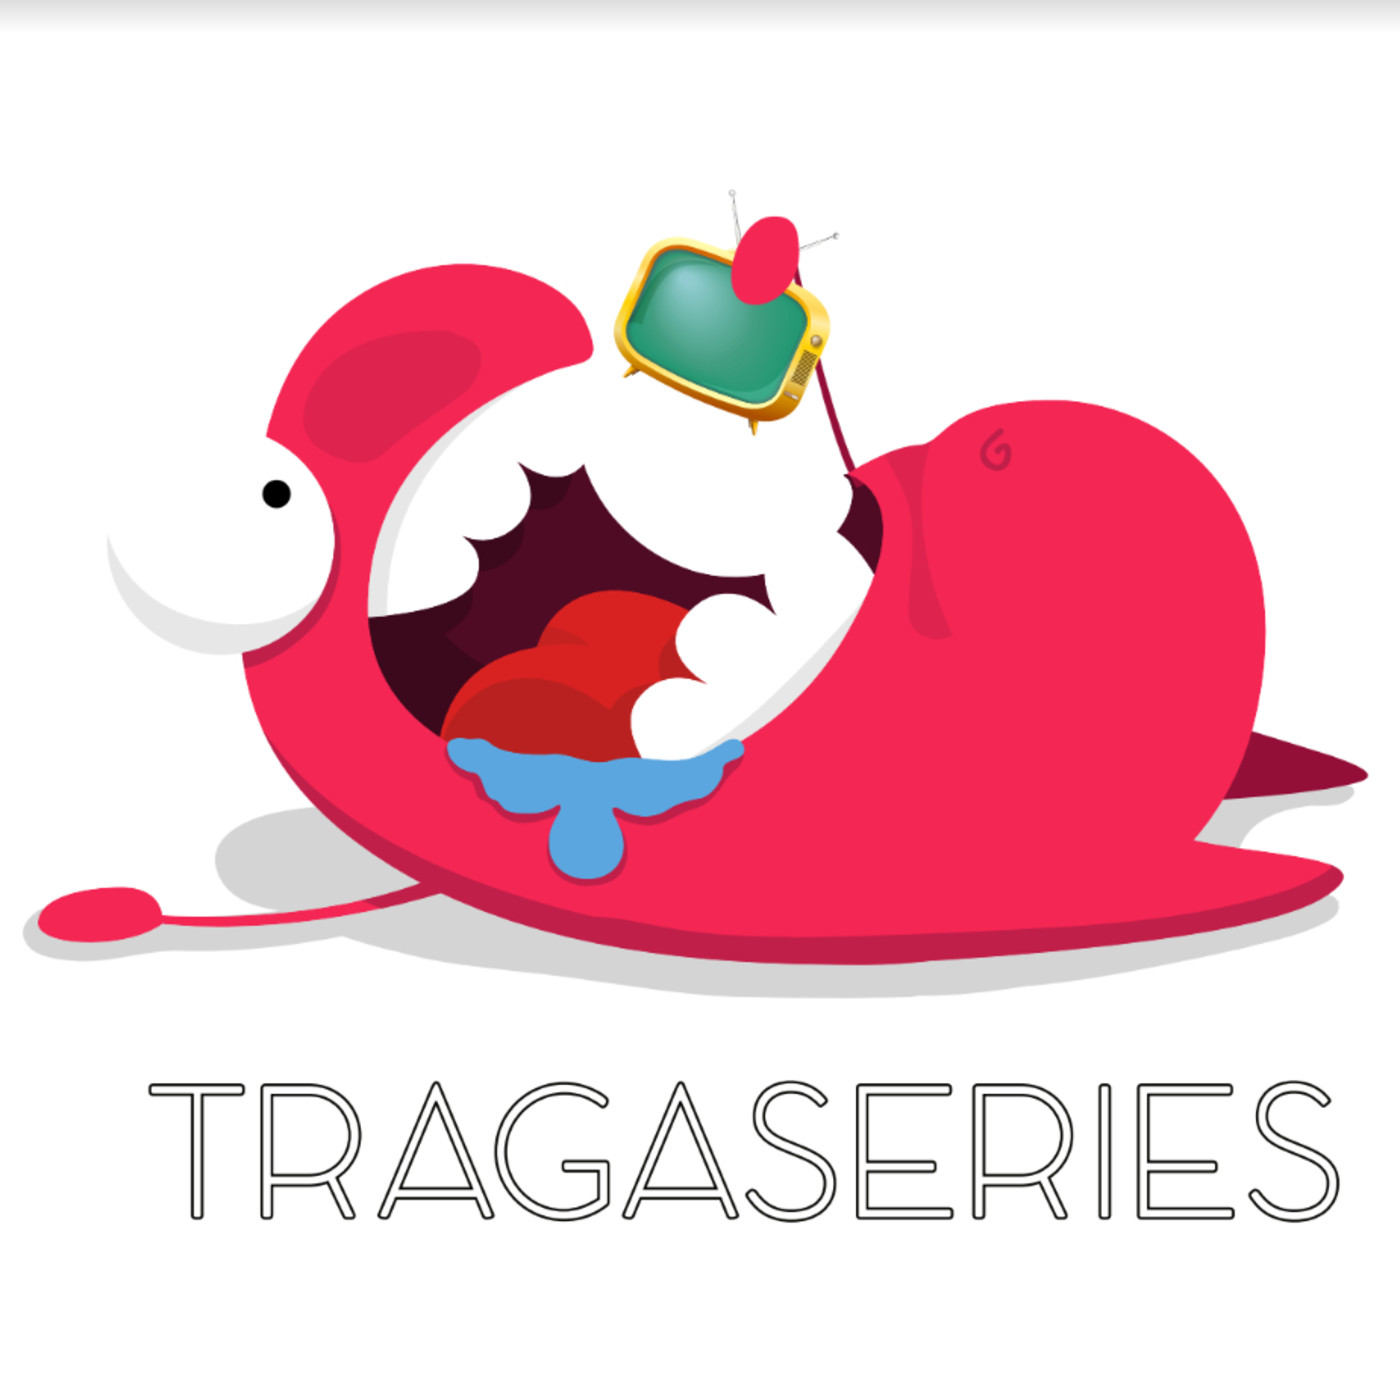 Tragaseries - 1x08 - Series que hemos visto y tú deberías verlas ya